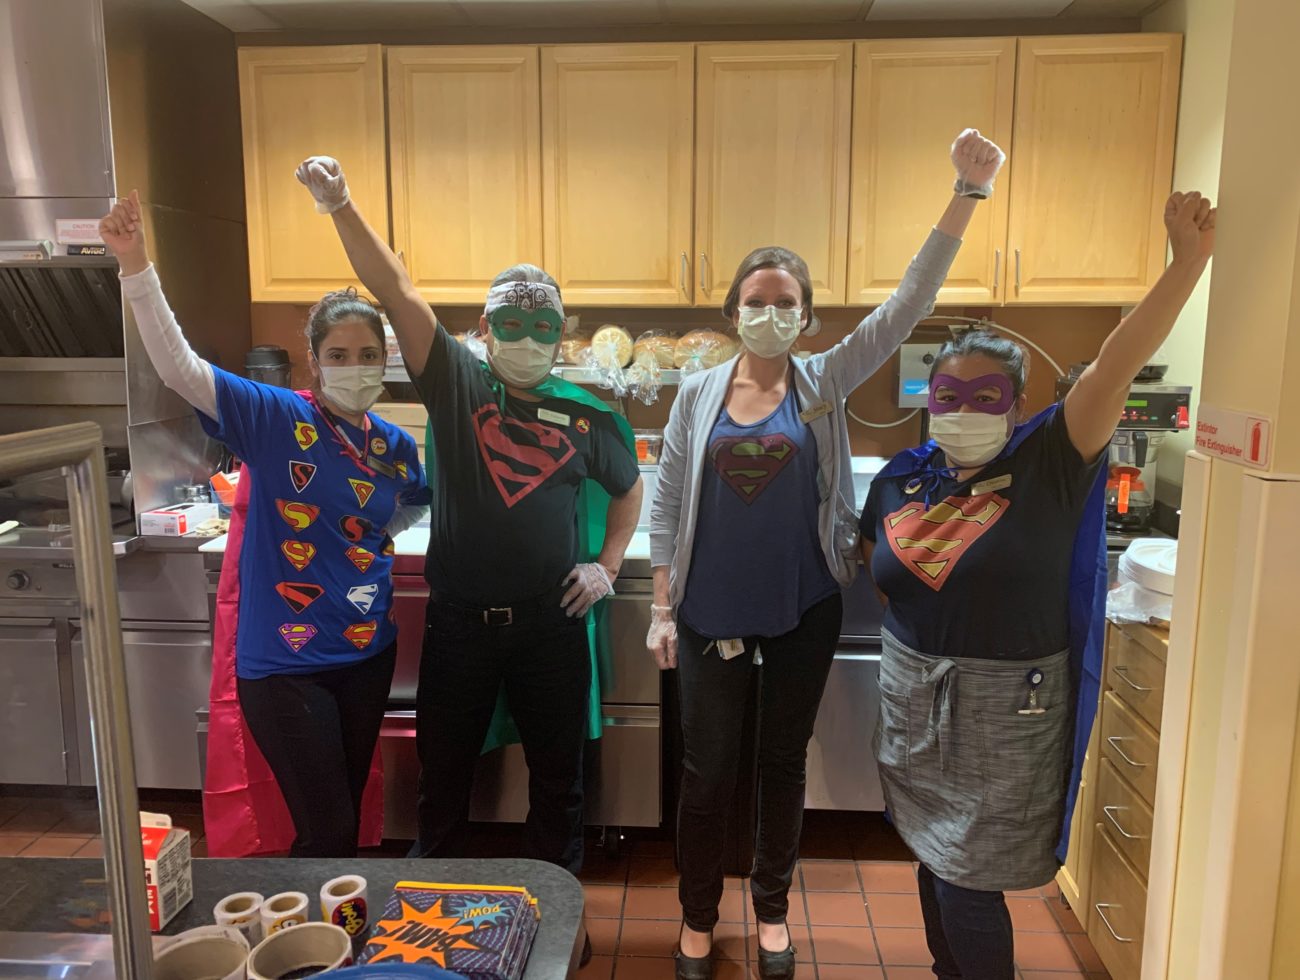 CBV staff in kitchen, wearing masks